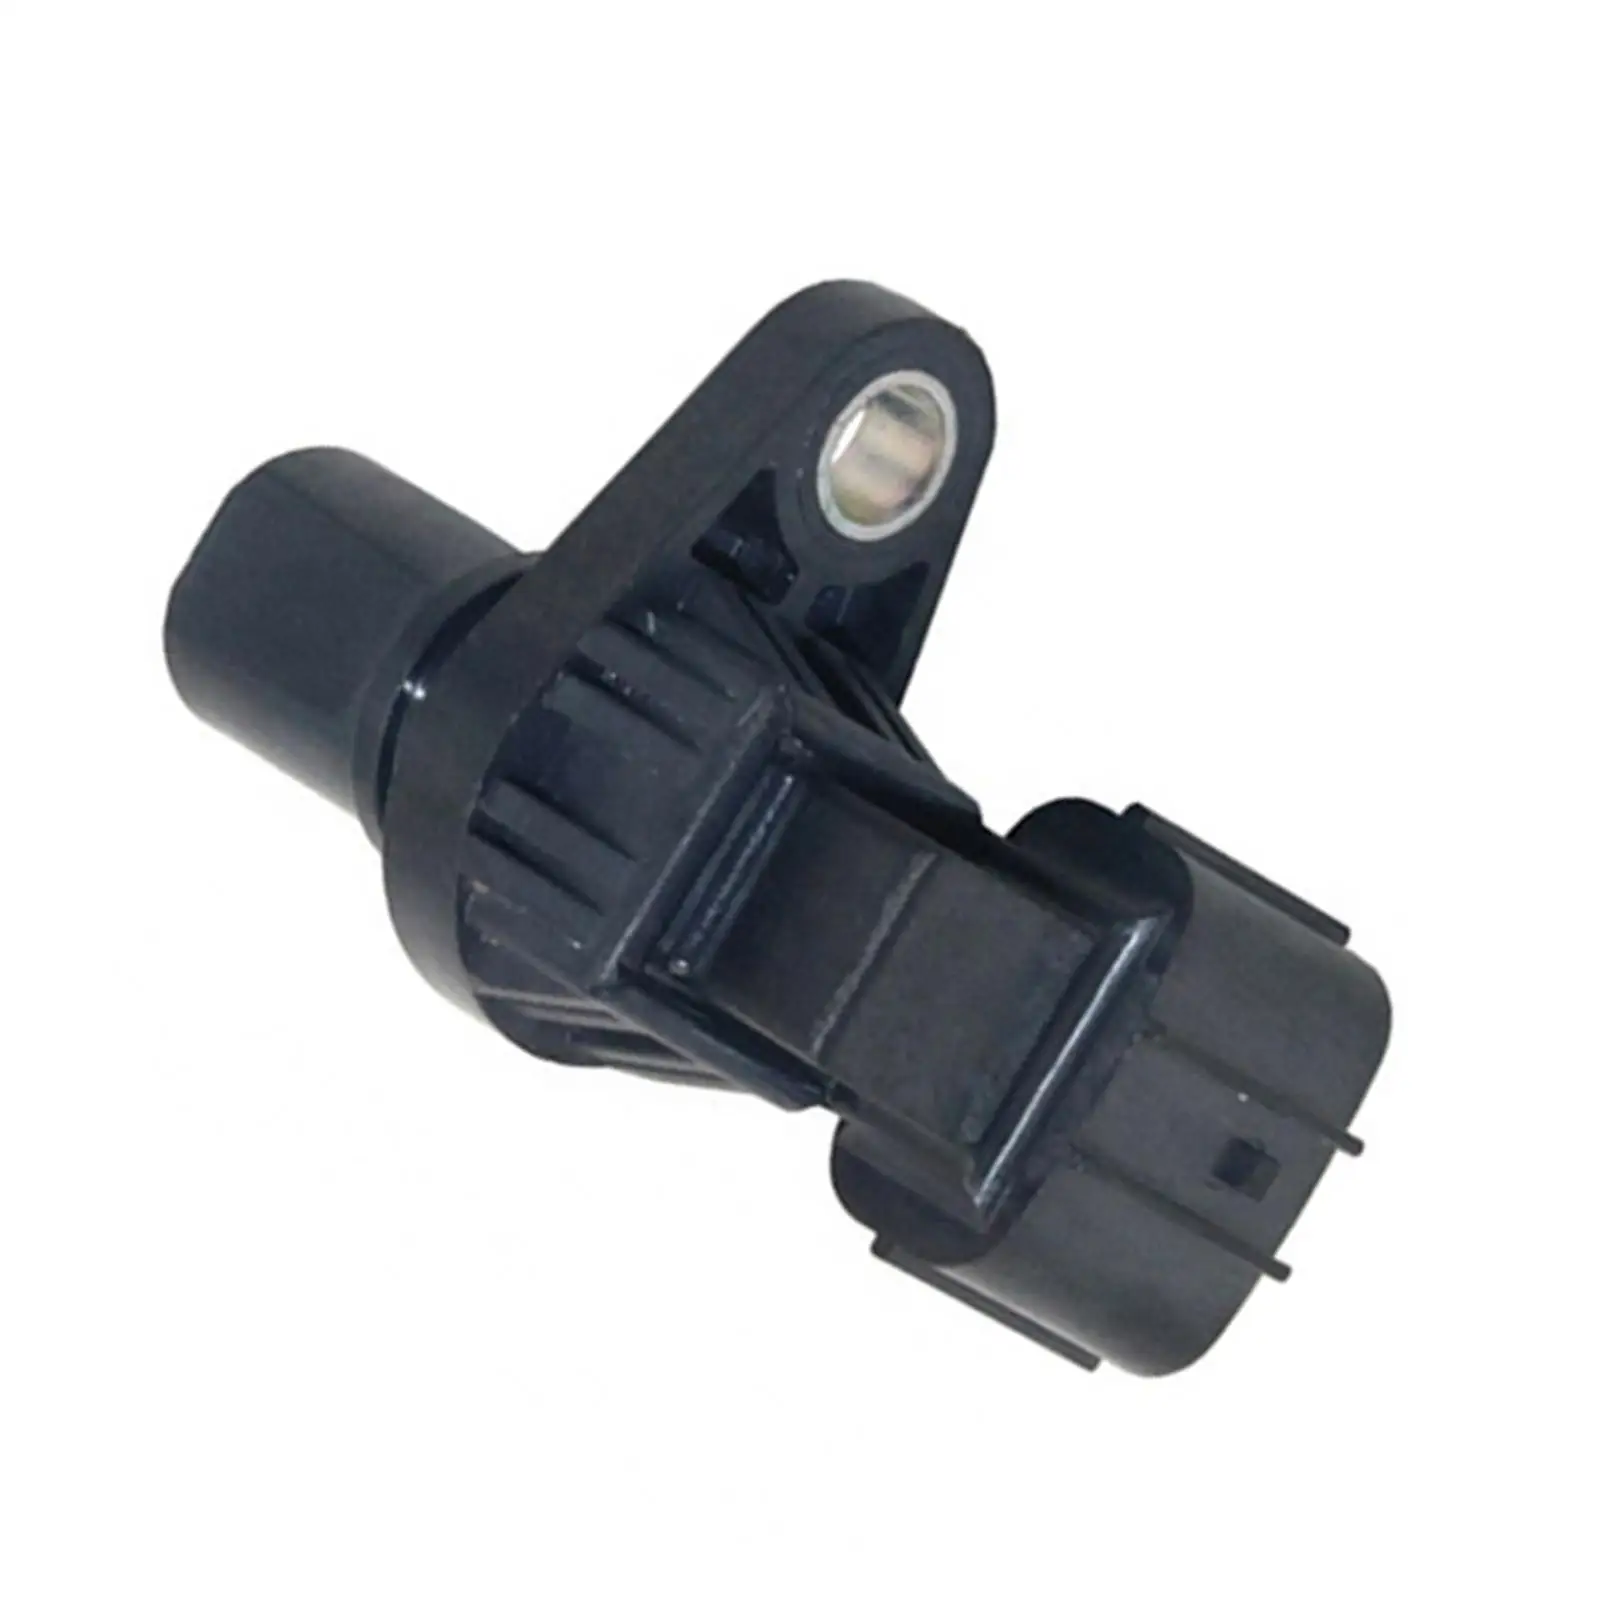 Car Crankshaft Position Sensor 33220-80G00 J005T23891 J5T23891A for Justy III Wagon Jimny Liana Motors Parts